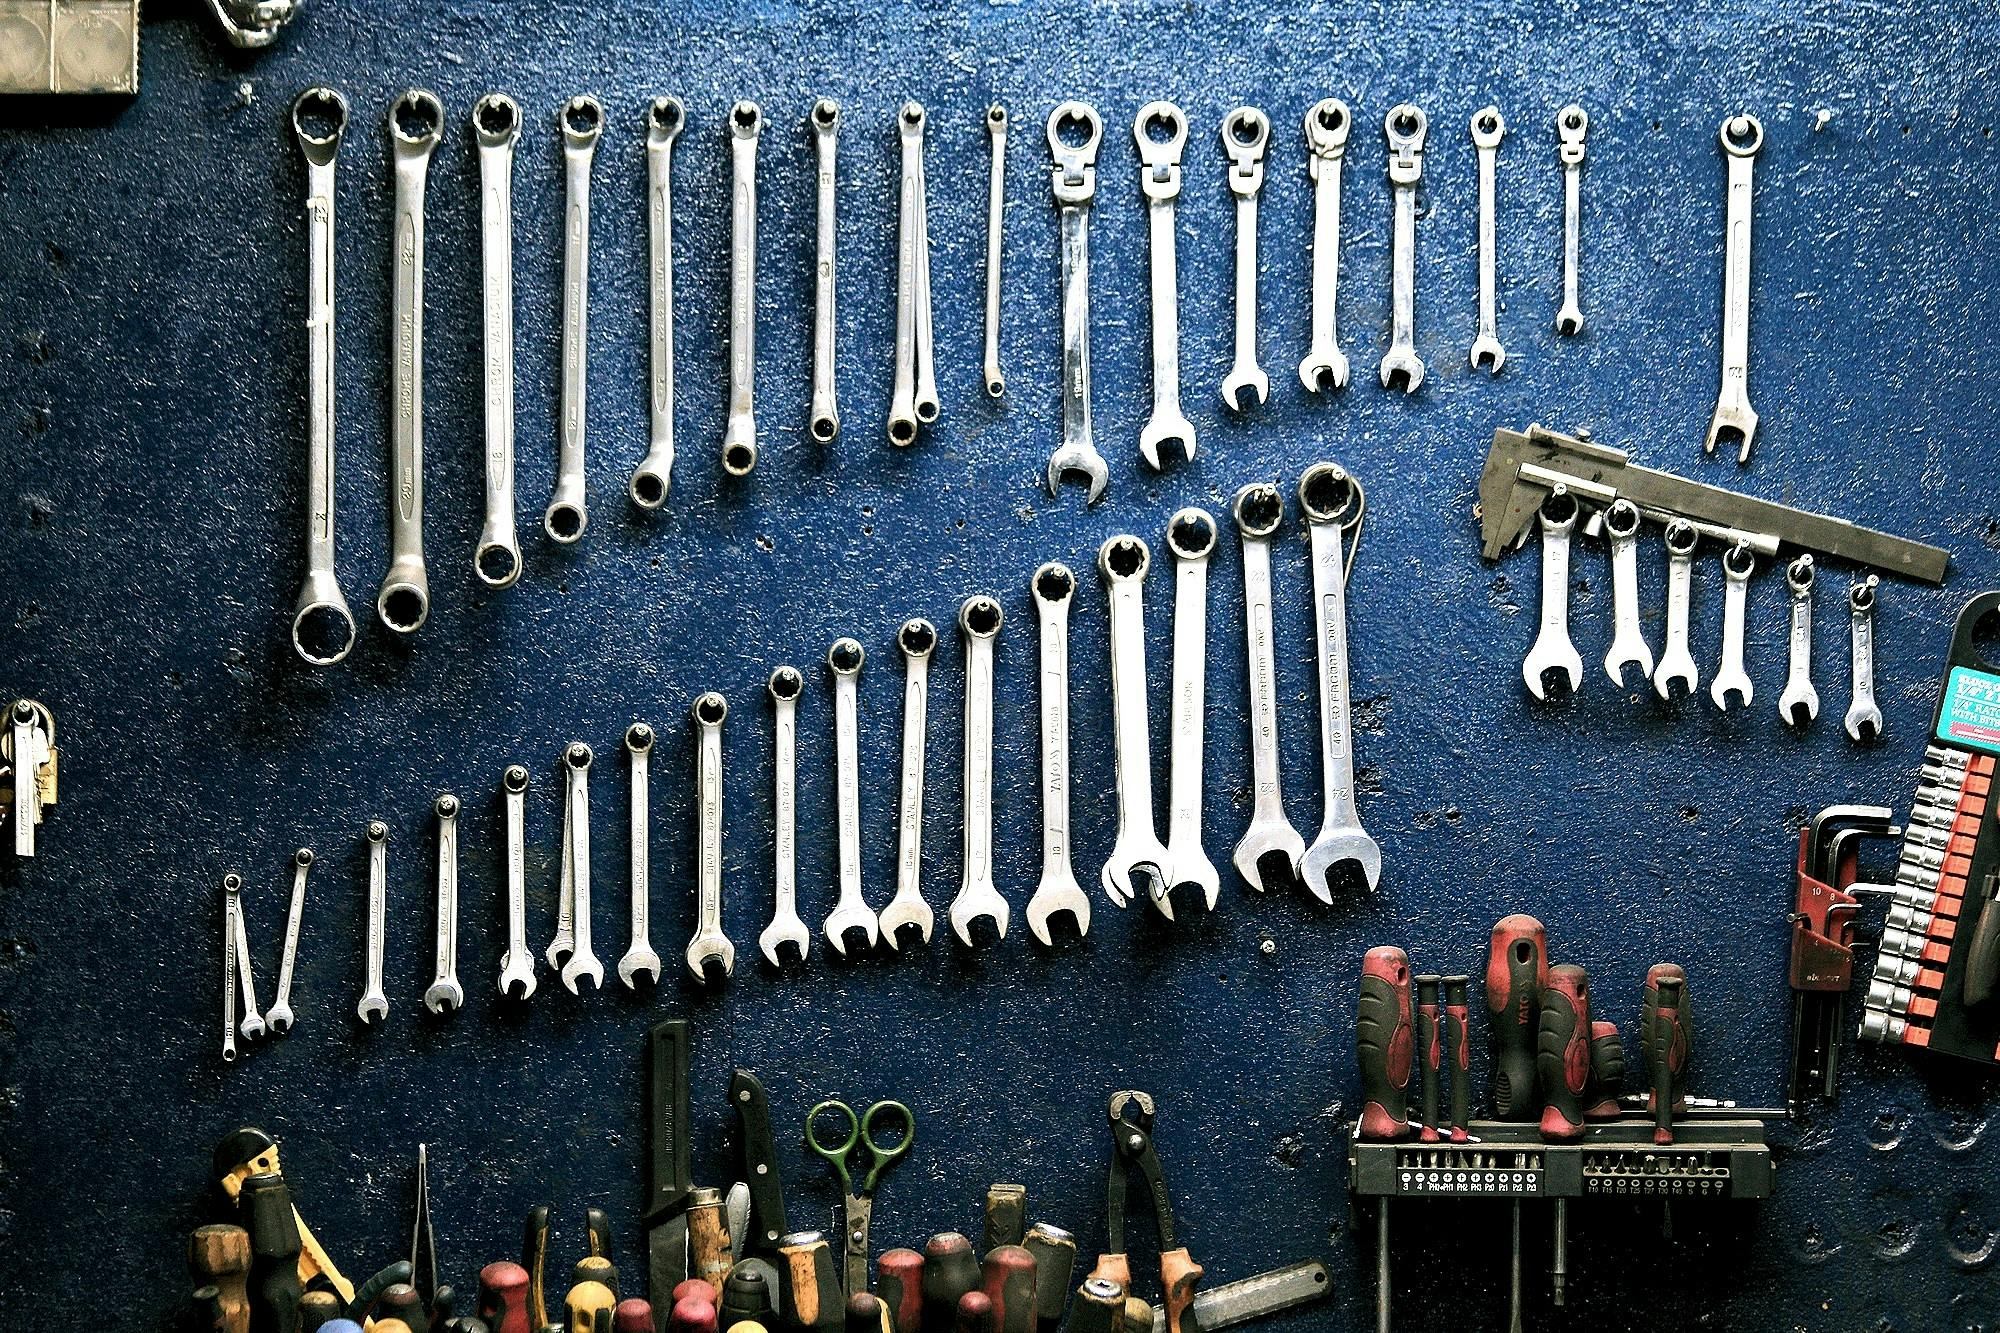 Tools, garage storage